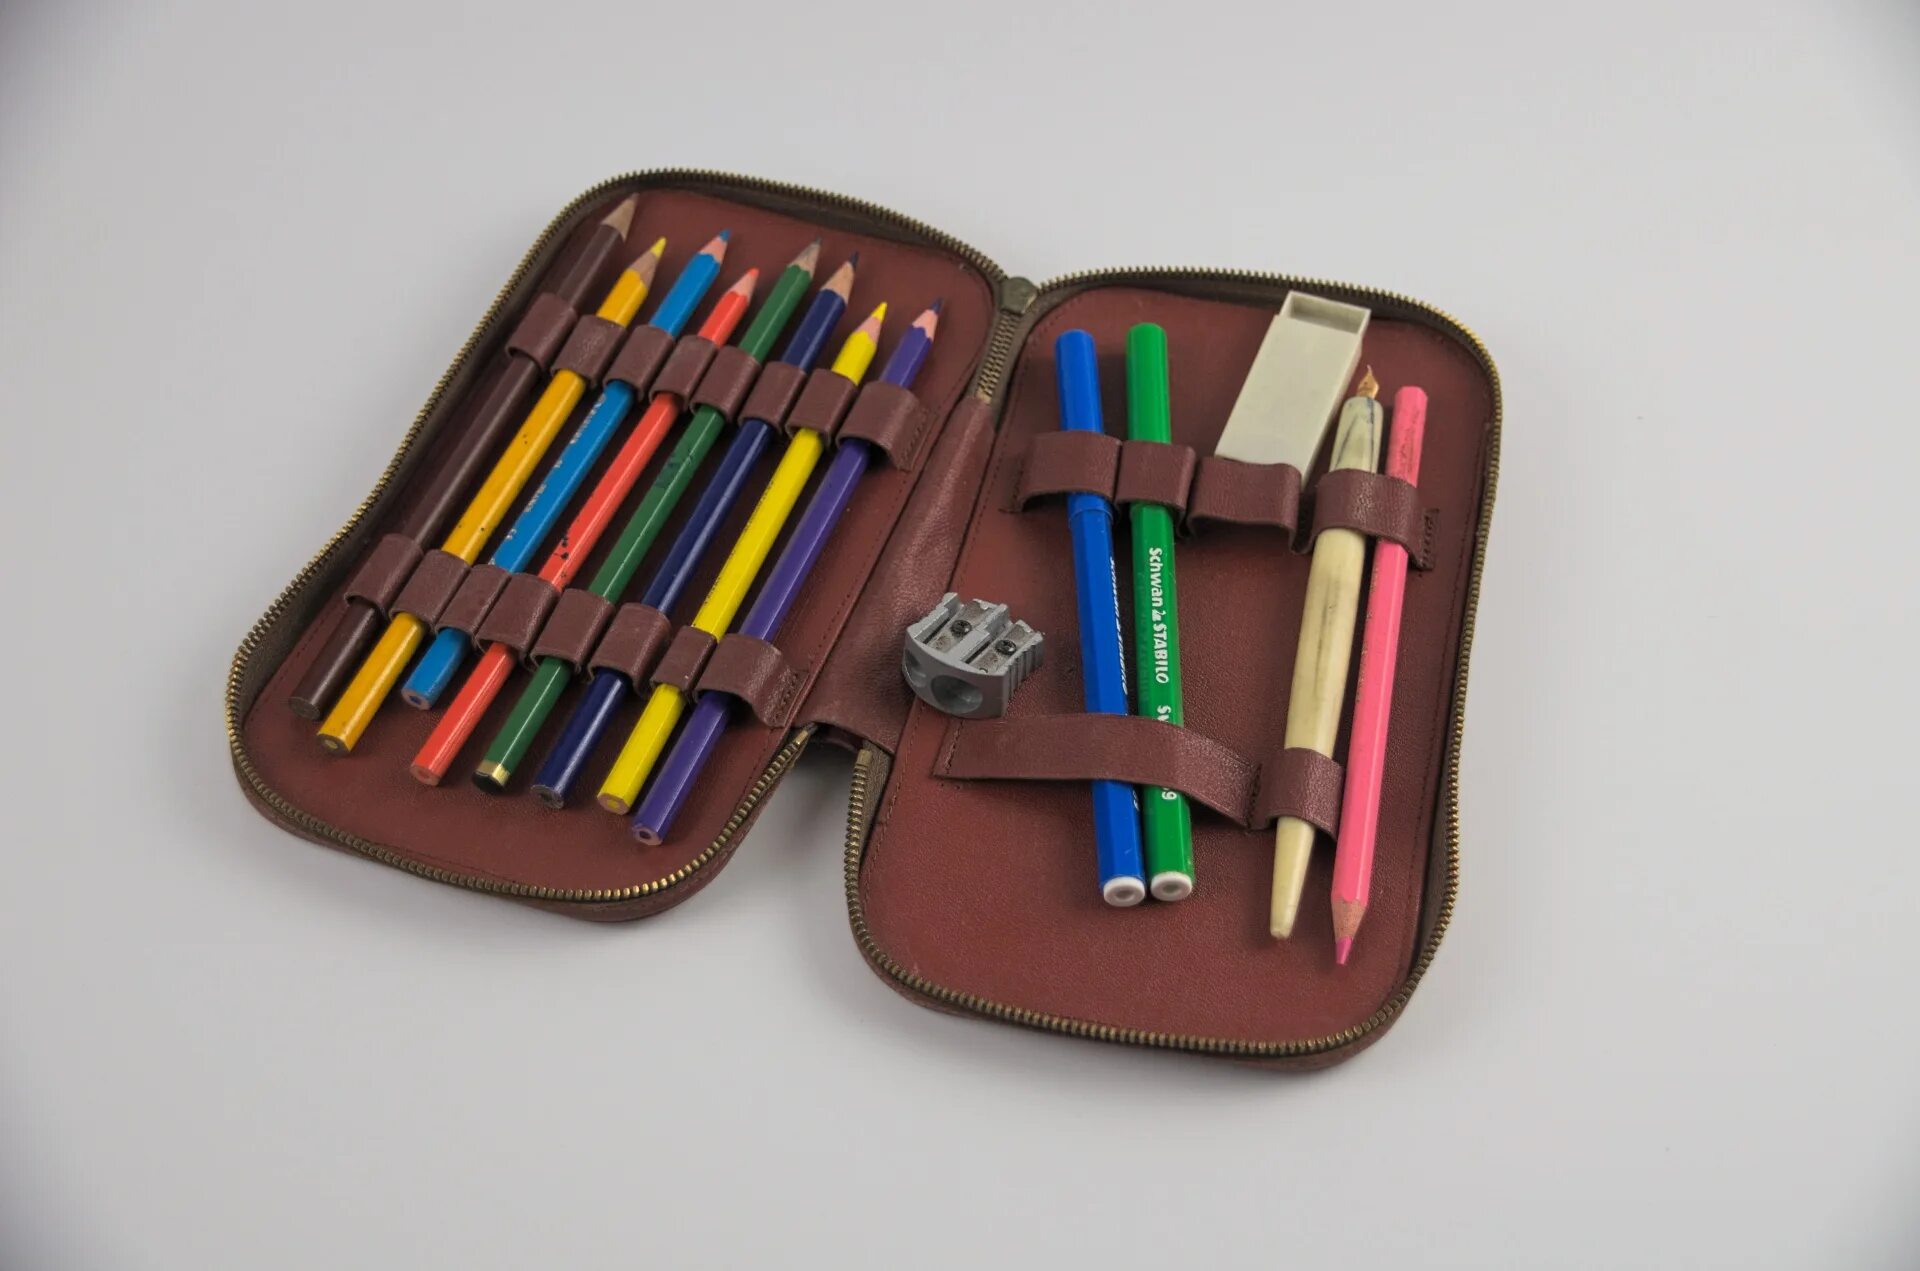 4 pencils cases. Пенал для карандашей. Геометрический пенал для первоклассника. Художественный пенал для карандашей. Фотография карандашей в пенале.